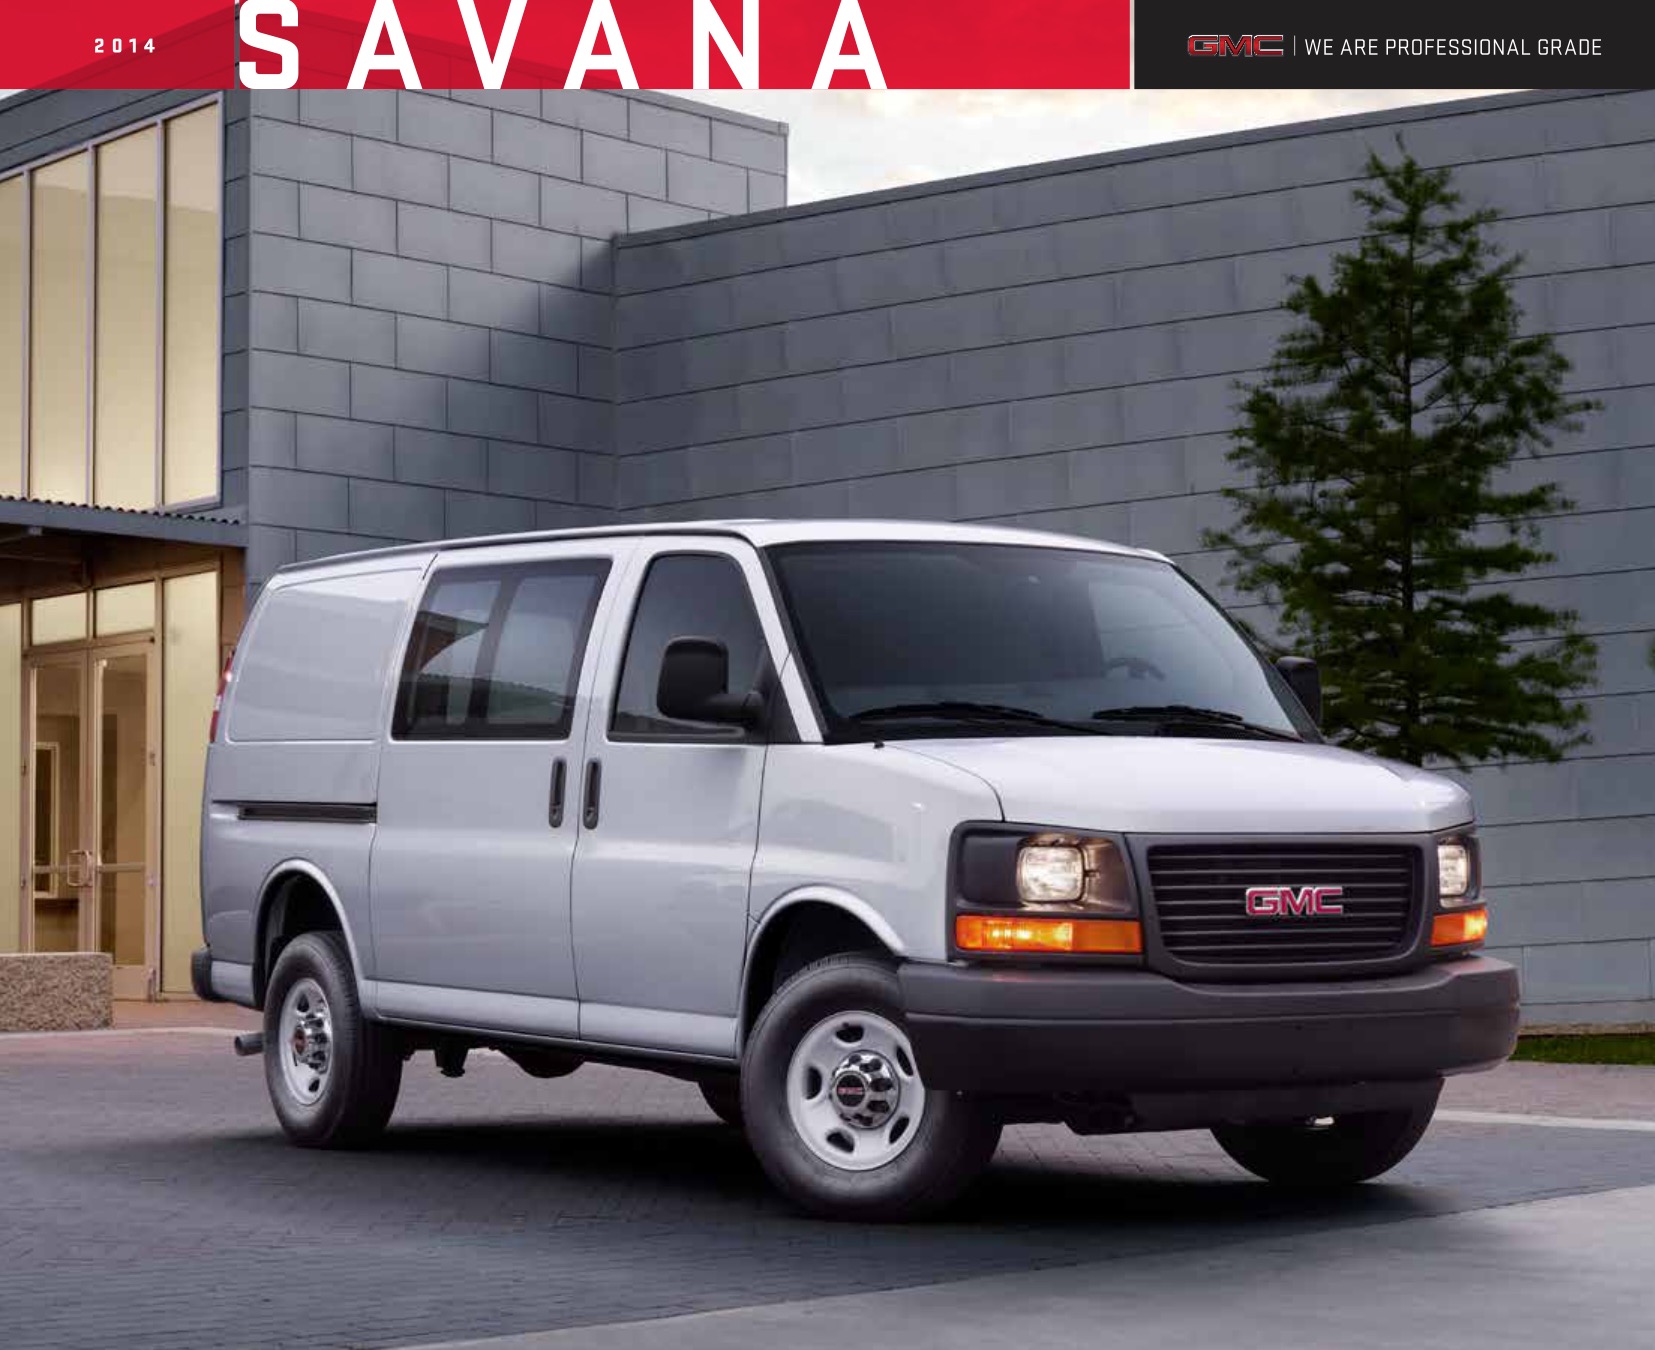 2014 GMC Savana Brochure